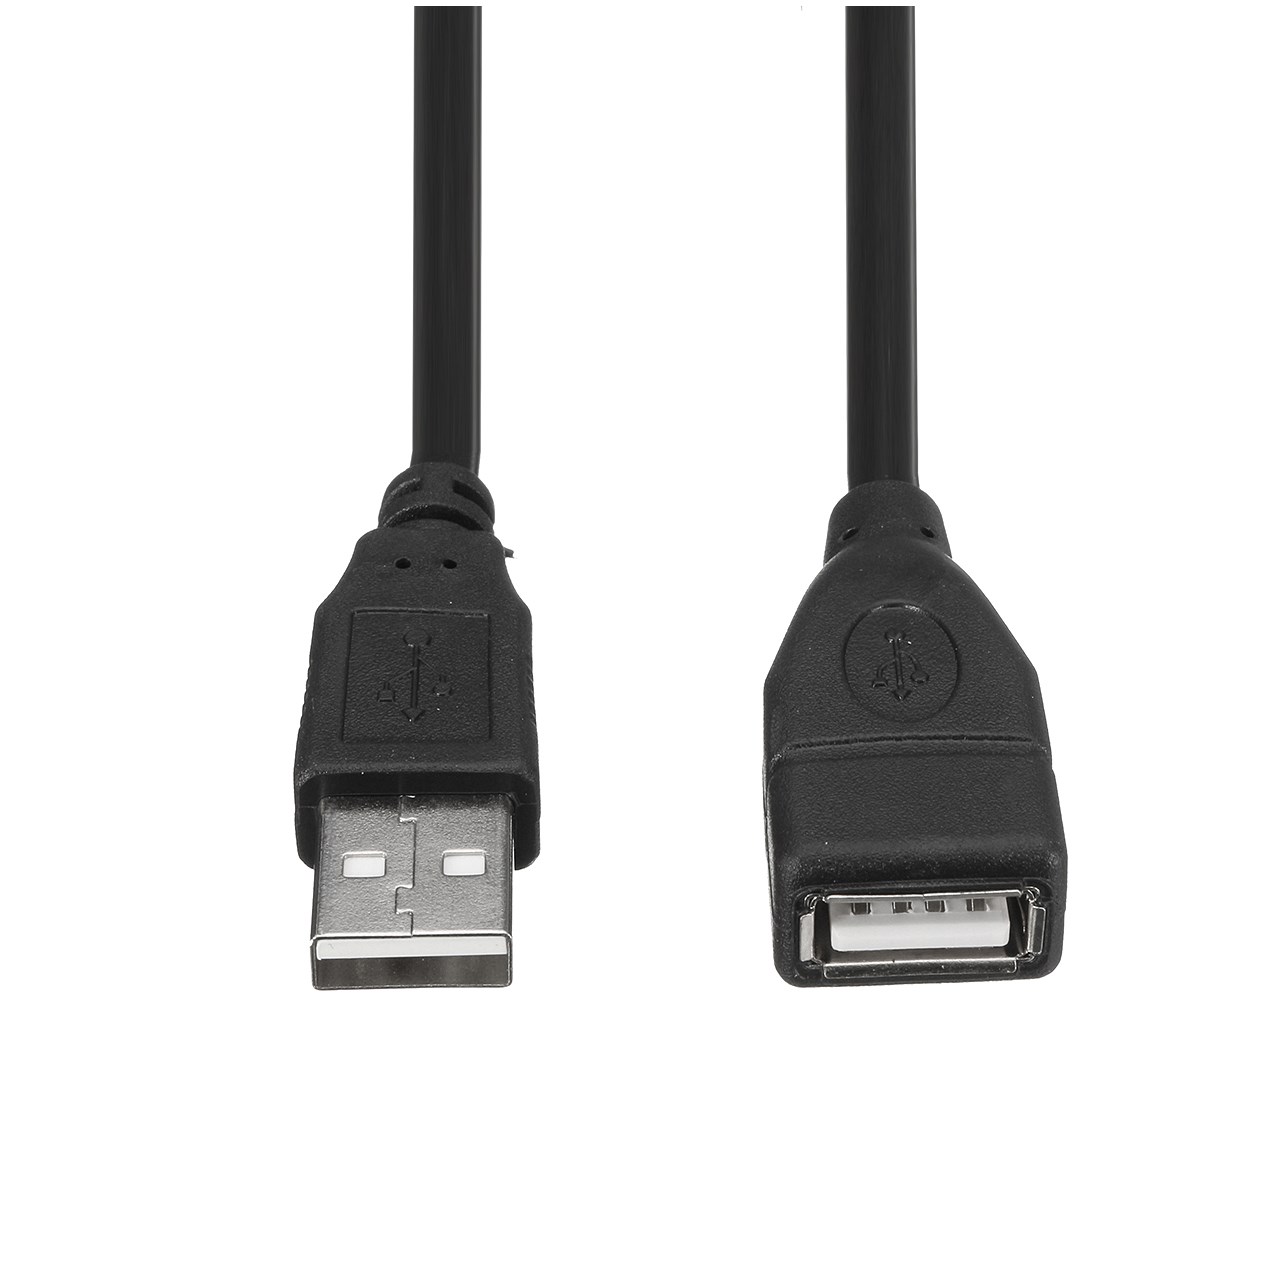 کابل افزایش طول USB 2.0 مدلST-EX1 به طول 10 سانتی متر